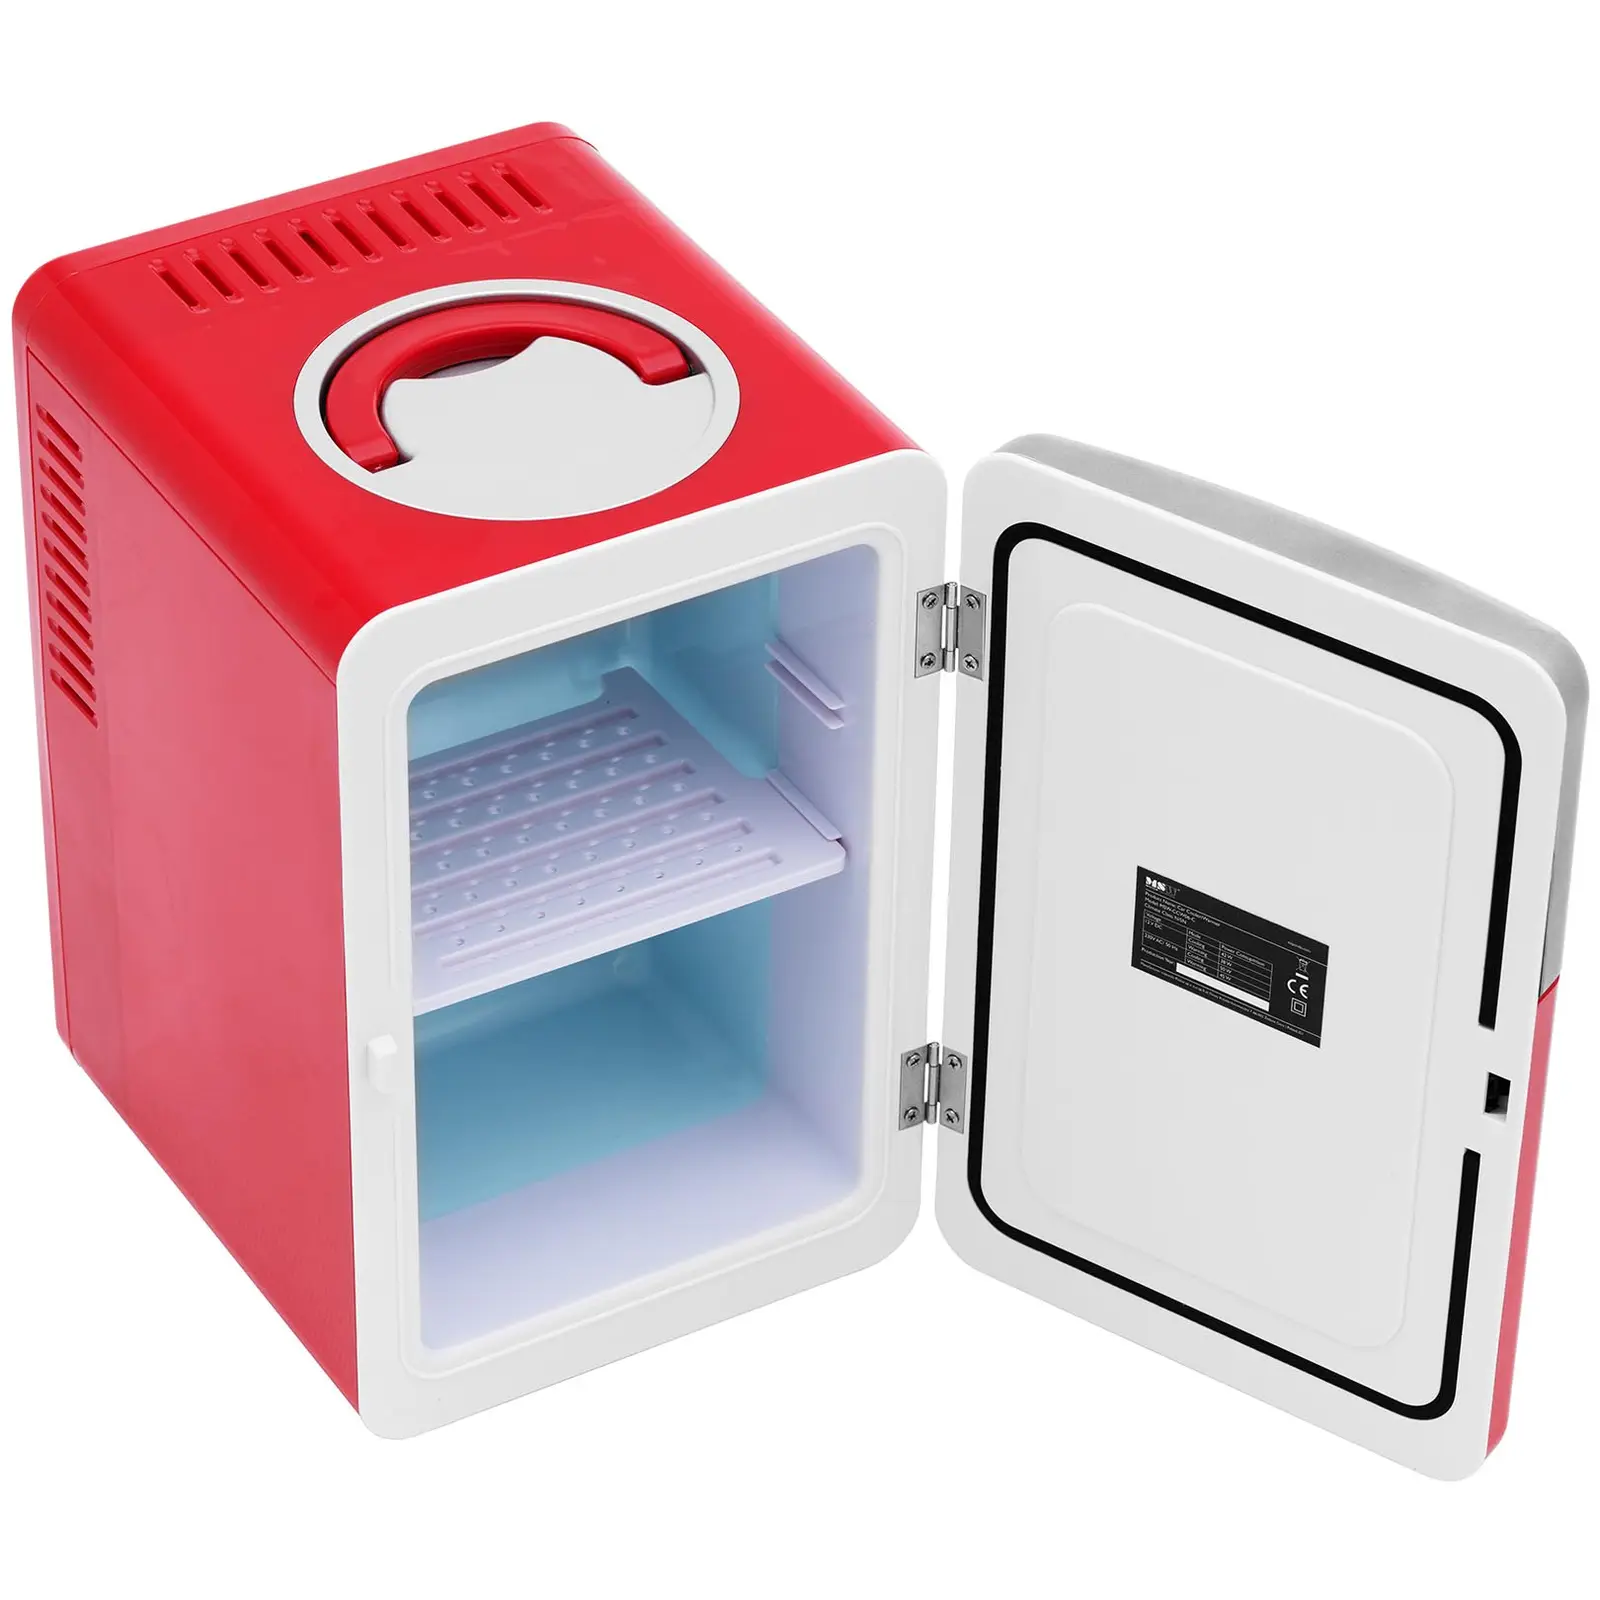 Мини хладилник 12 V / 230 V - уред 2 в 1 с функция за поддържане на топлината - 6 L - Червен/сребрист